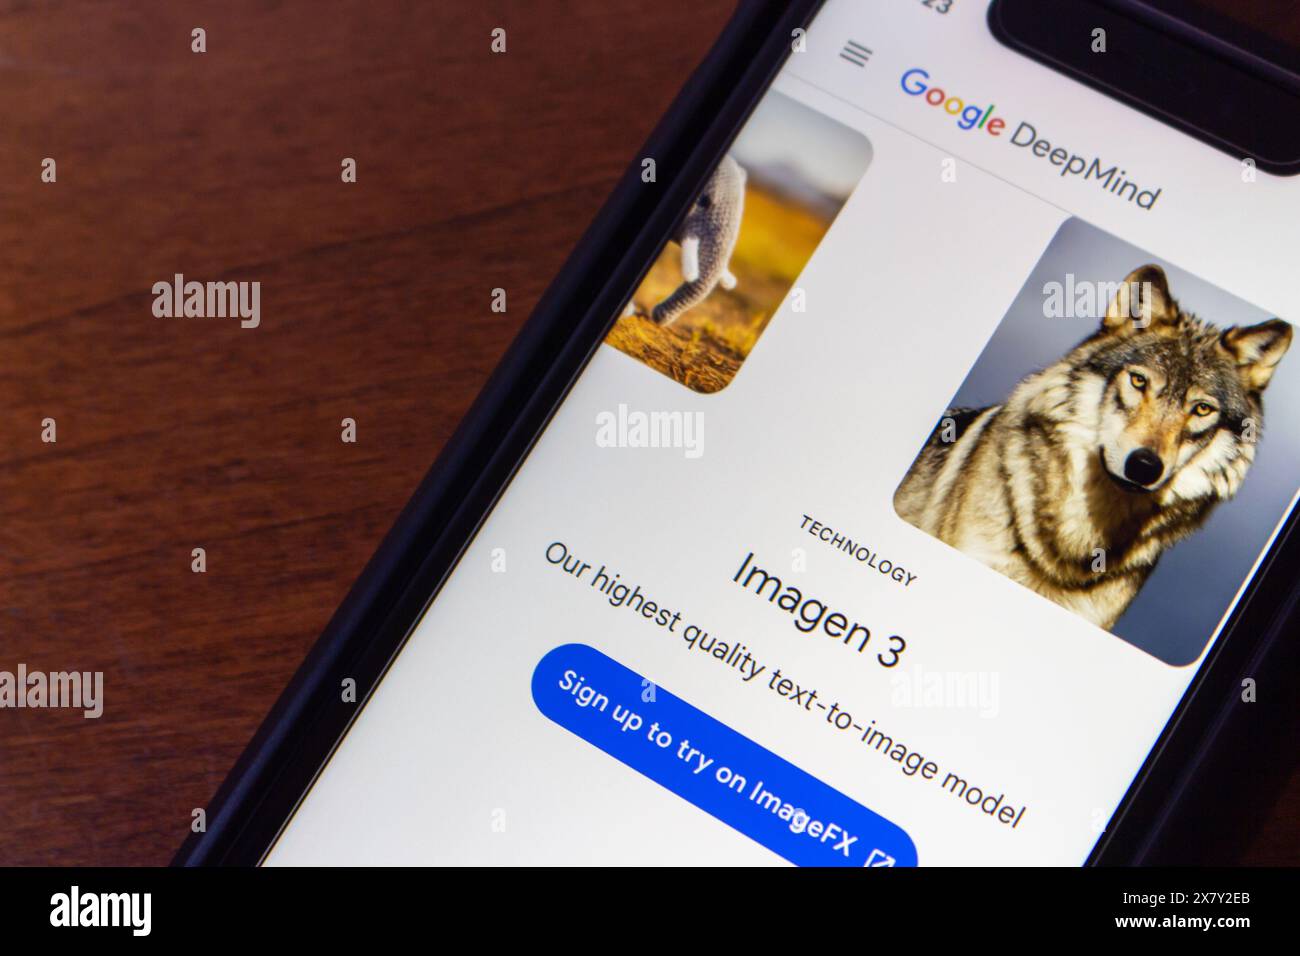 Sito Web Imagen 3. Imagen 3 è il modello avanzato di Google DeepMind da testo a immagine che genera immagini dettagliate di alta qualità dai prompt di testo Foto Stock